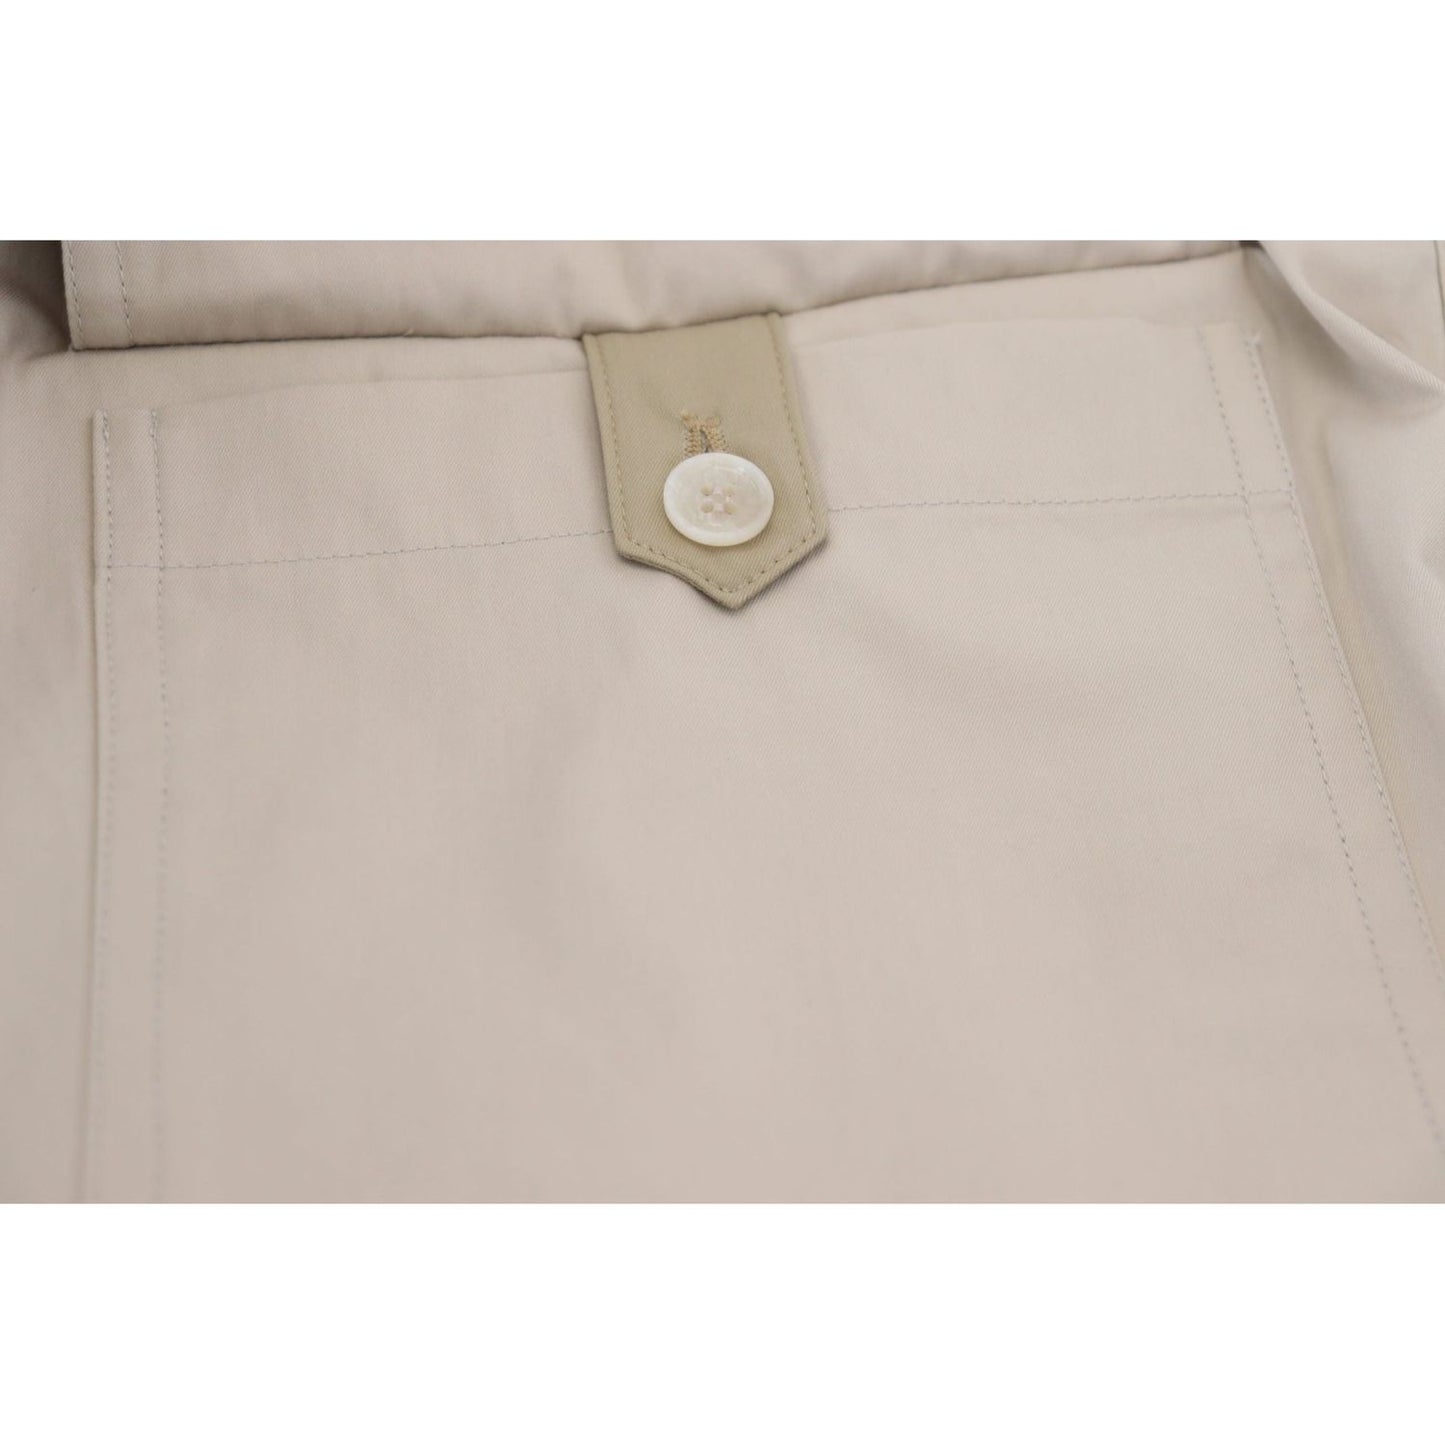 Dolce & Gabbana Elegant Beige Cotton Trousers Jeans & Pants beige-cotton-women-cargo-pants